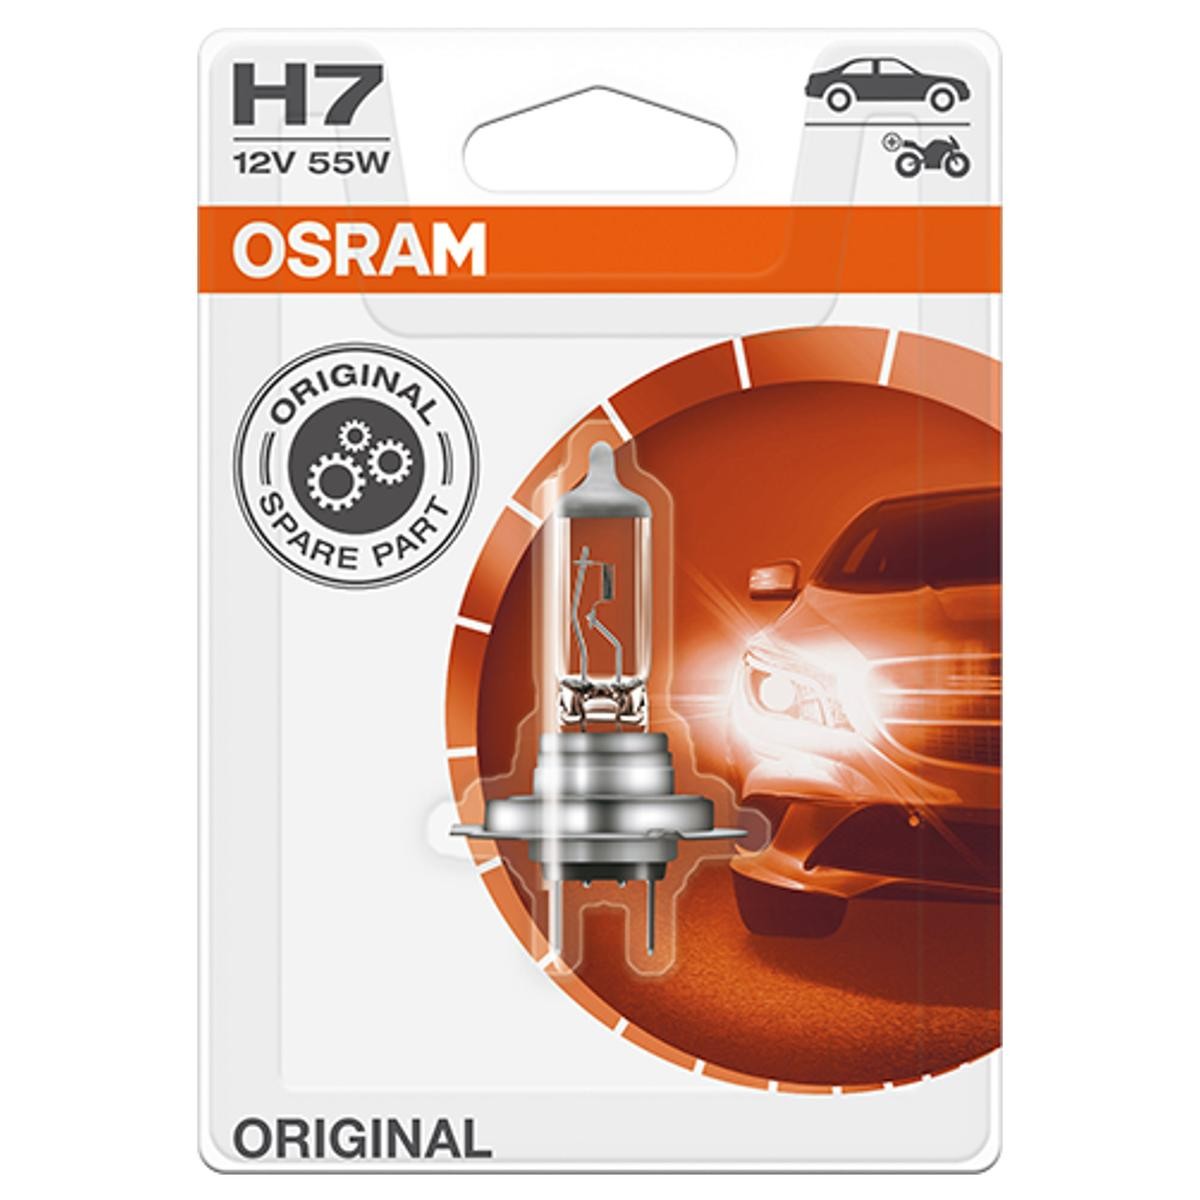 OSRAM 64210-01B DACIA Lampe für Fernlicht H7 12V 55W3200K Halogen